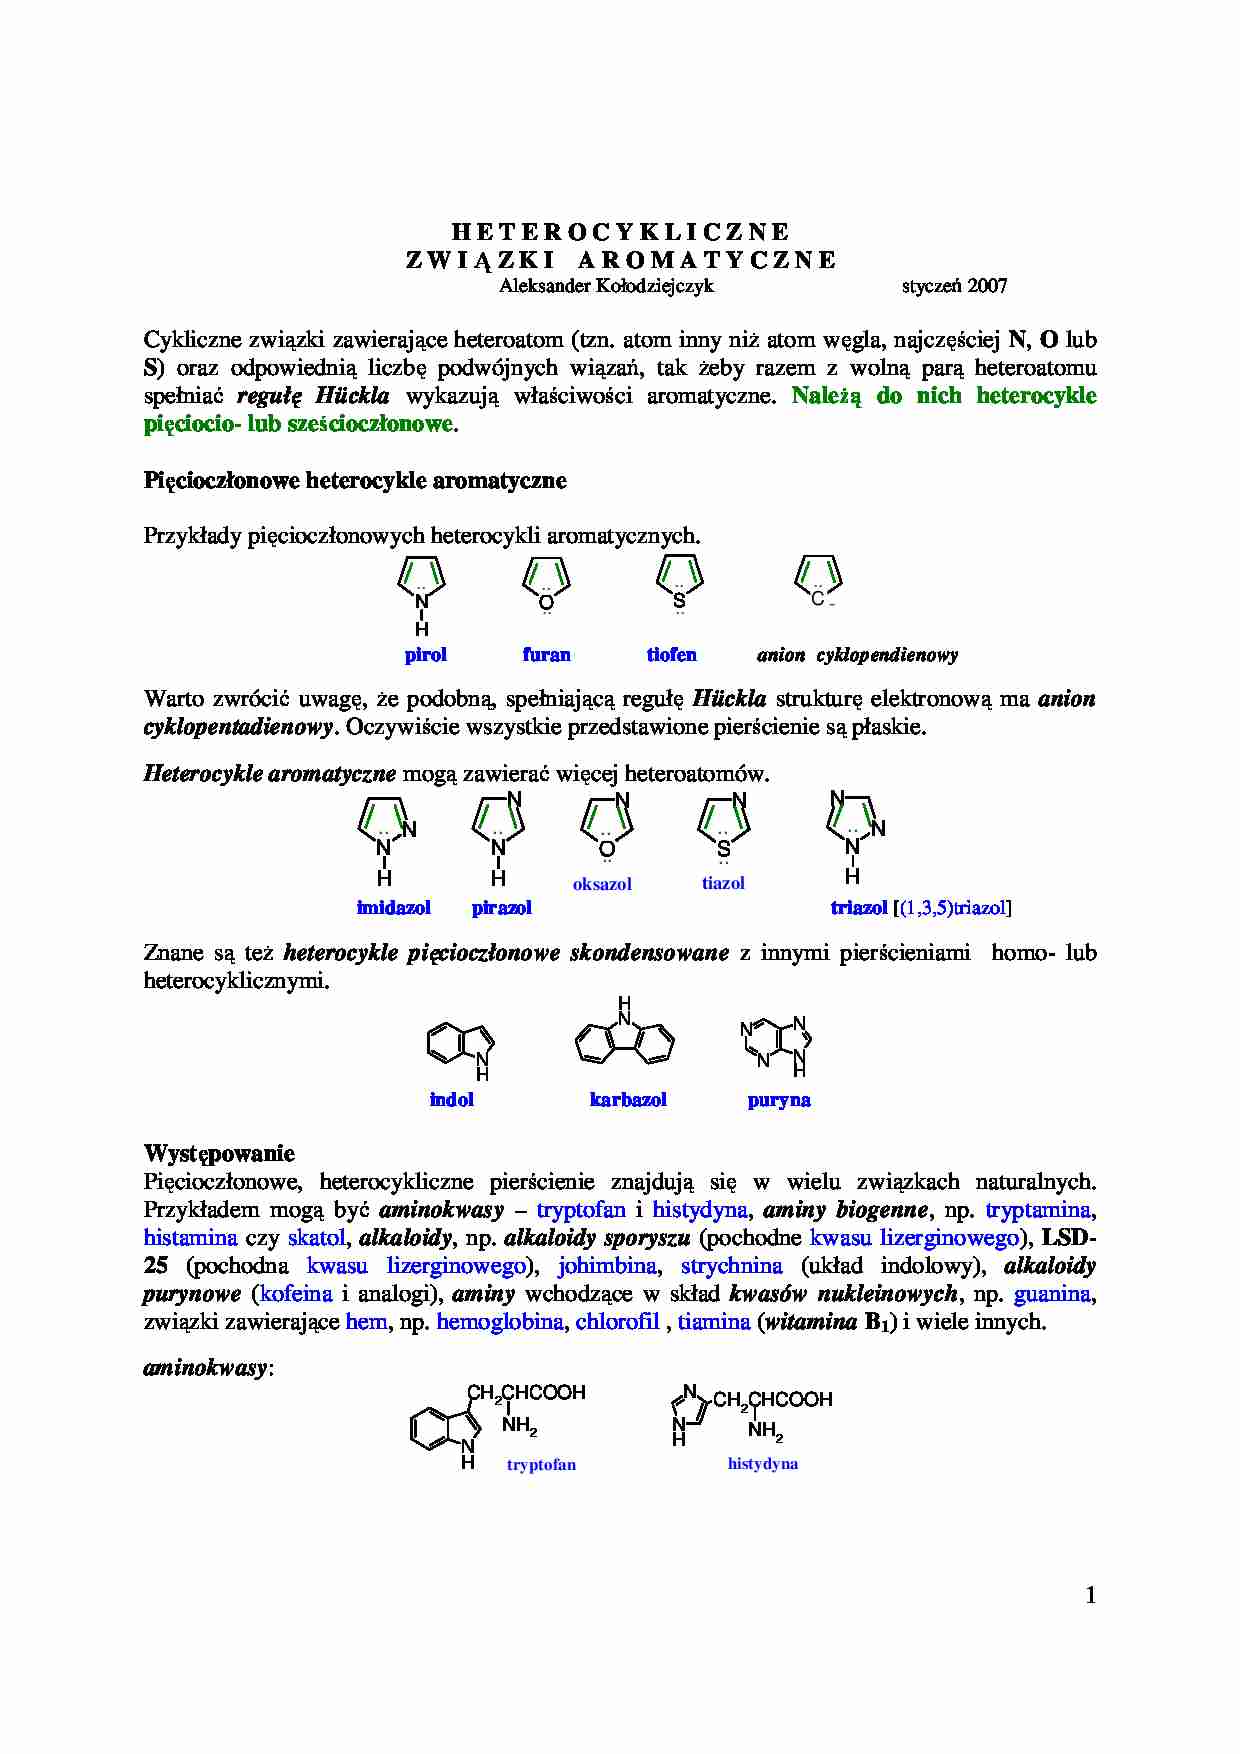 Heterocykliczne związki aromatyczne - omówienie  - strona 1